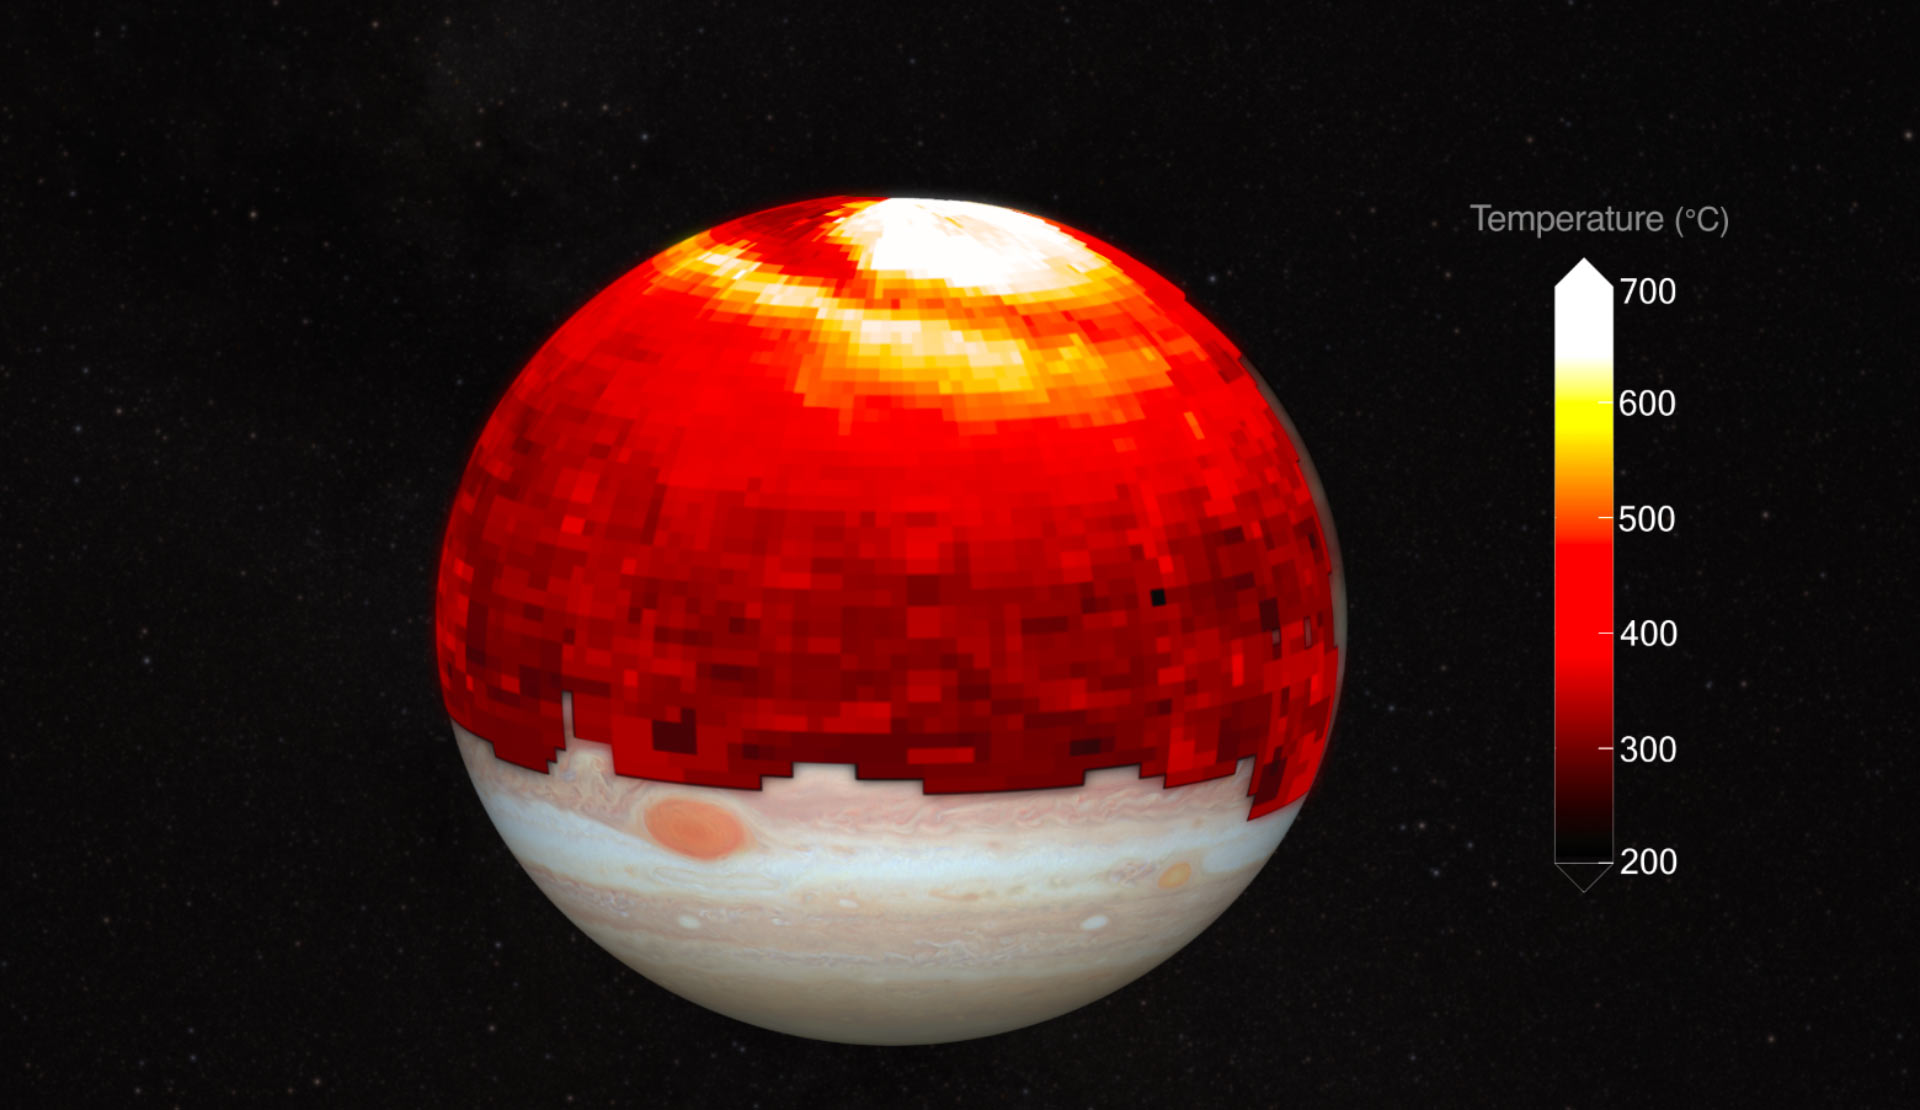 Huge heat wave spotted in Jupiter's upper atmosphere